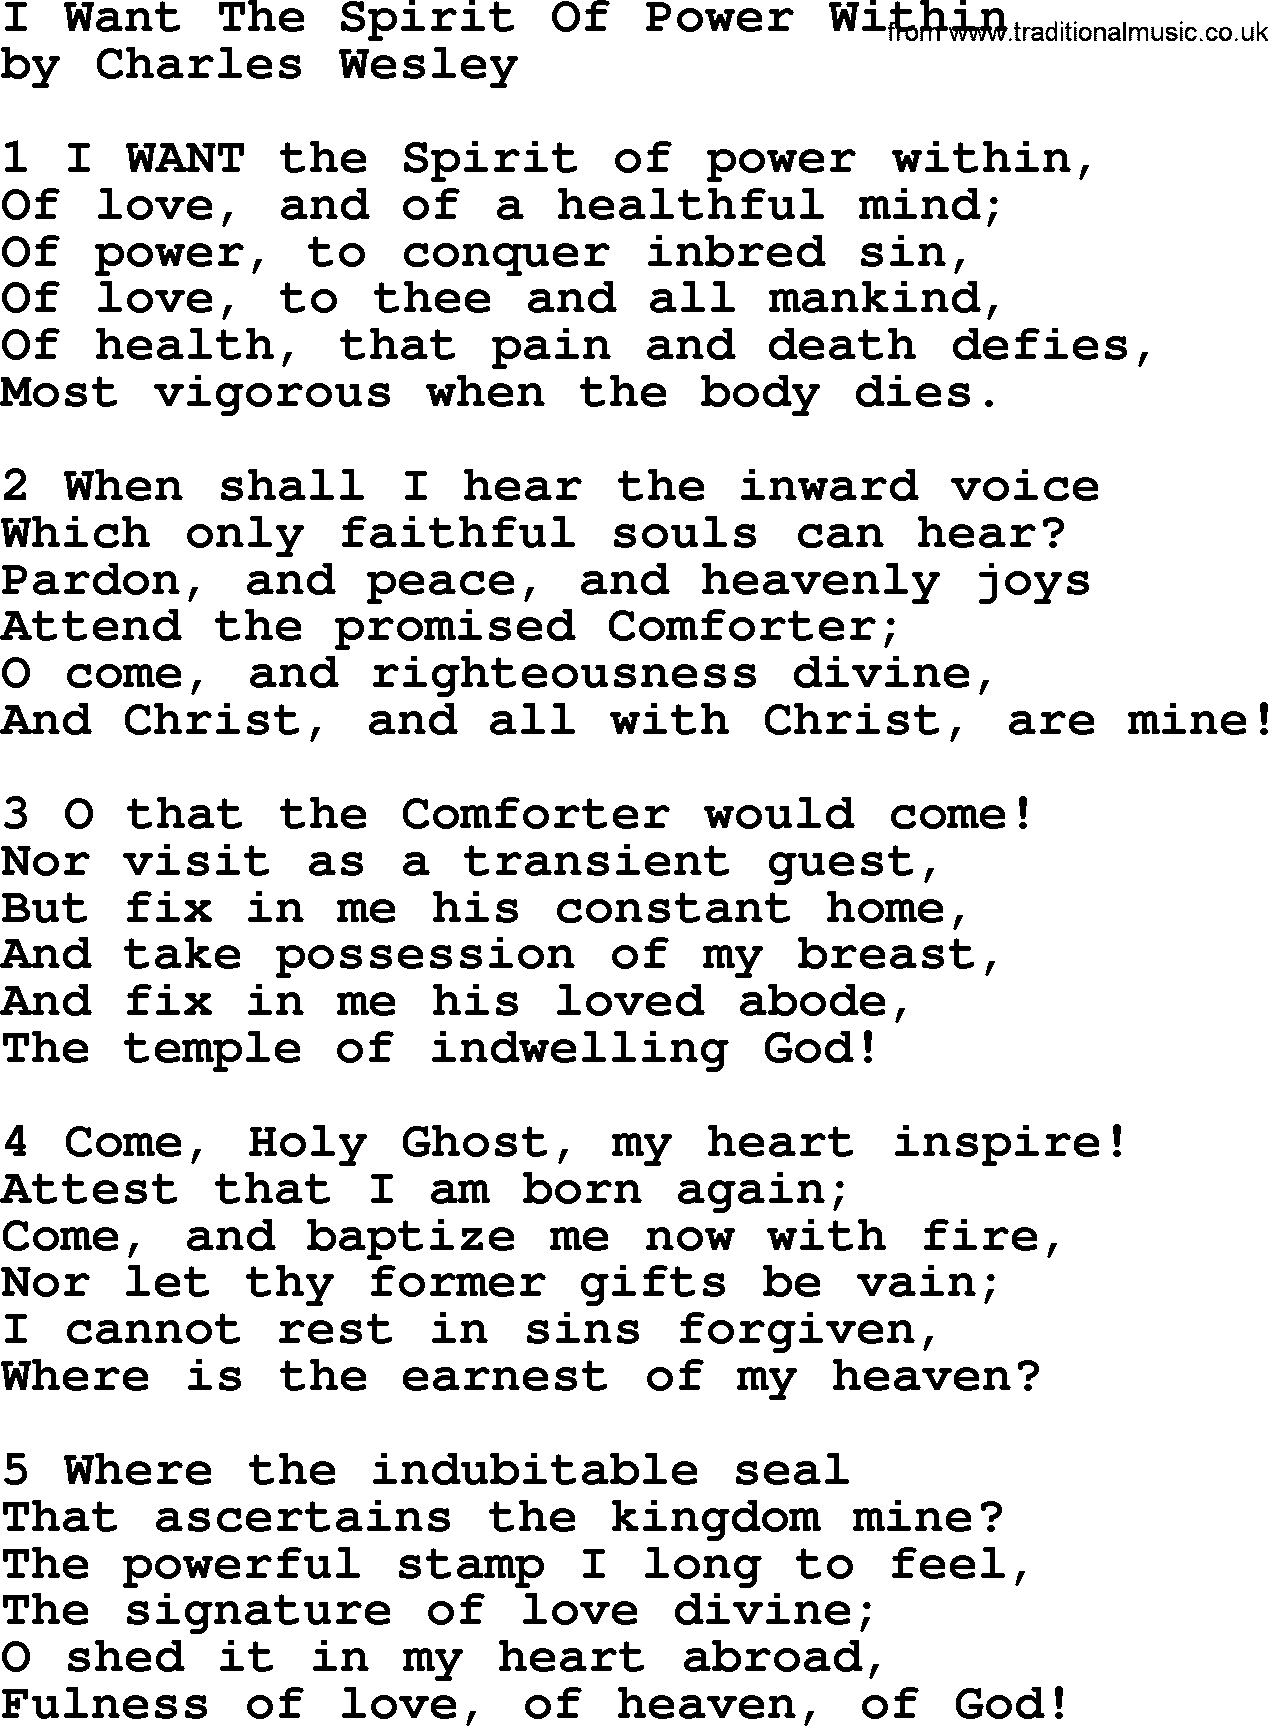 Charles Wesley hymn: I Want The Spirit Of Power Within, lyrics